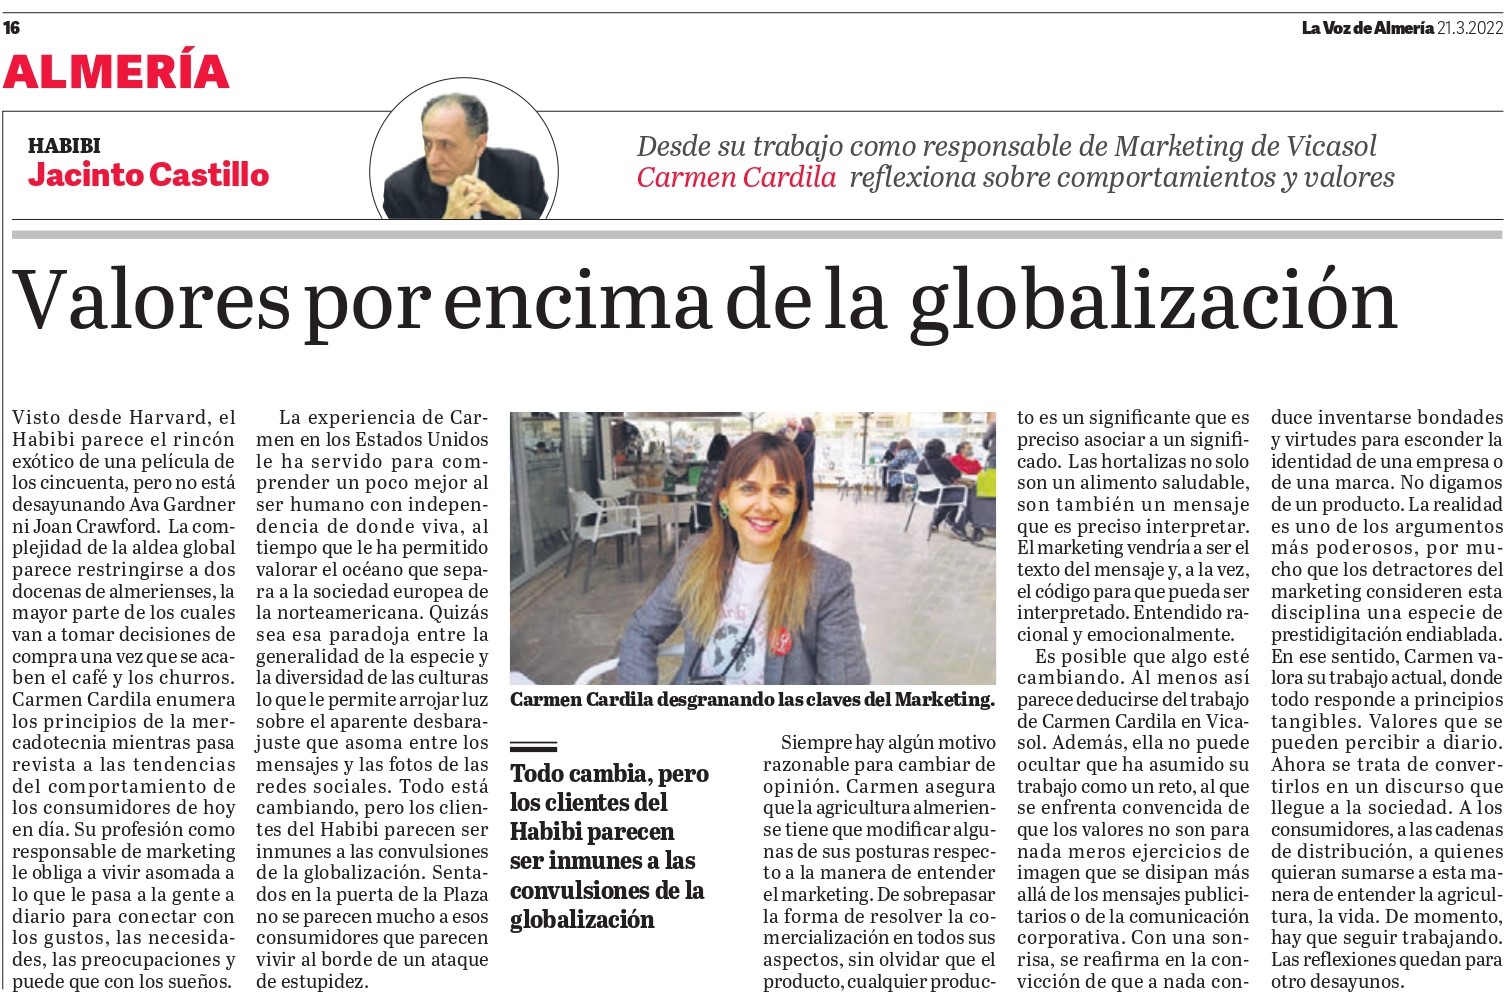 Carmen Cardila, Directora de Marketing de Vicasol, desgrana las claves del sector